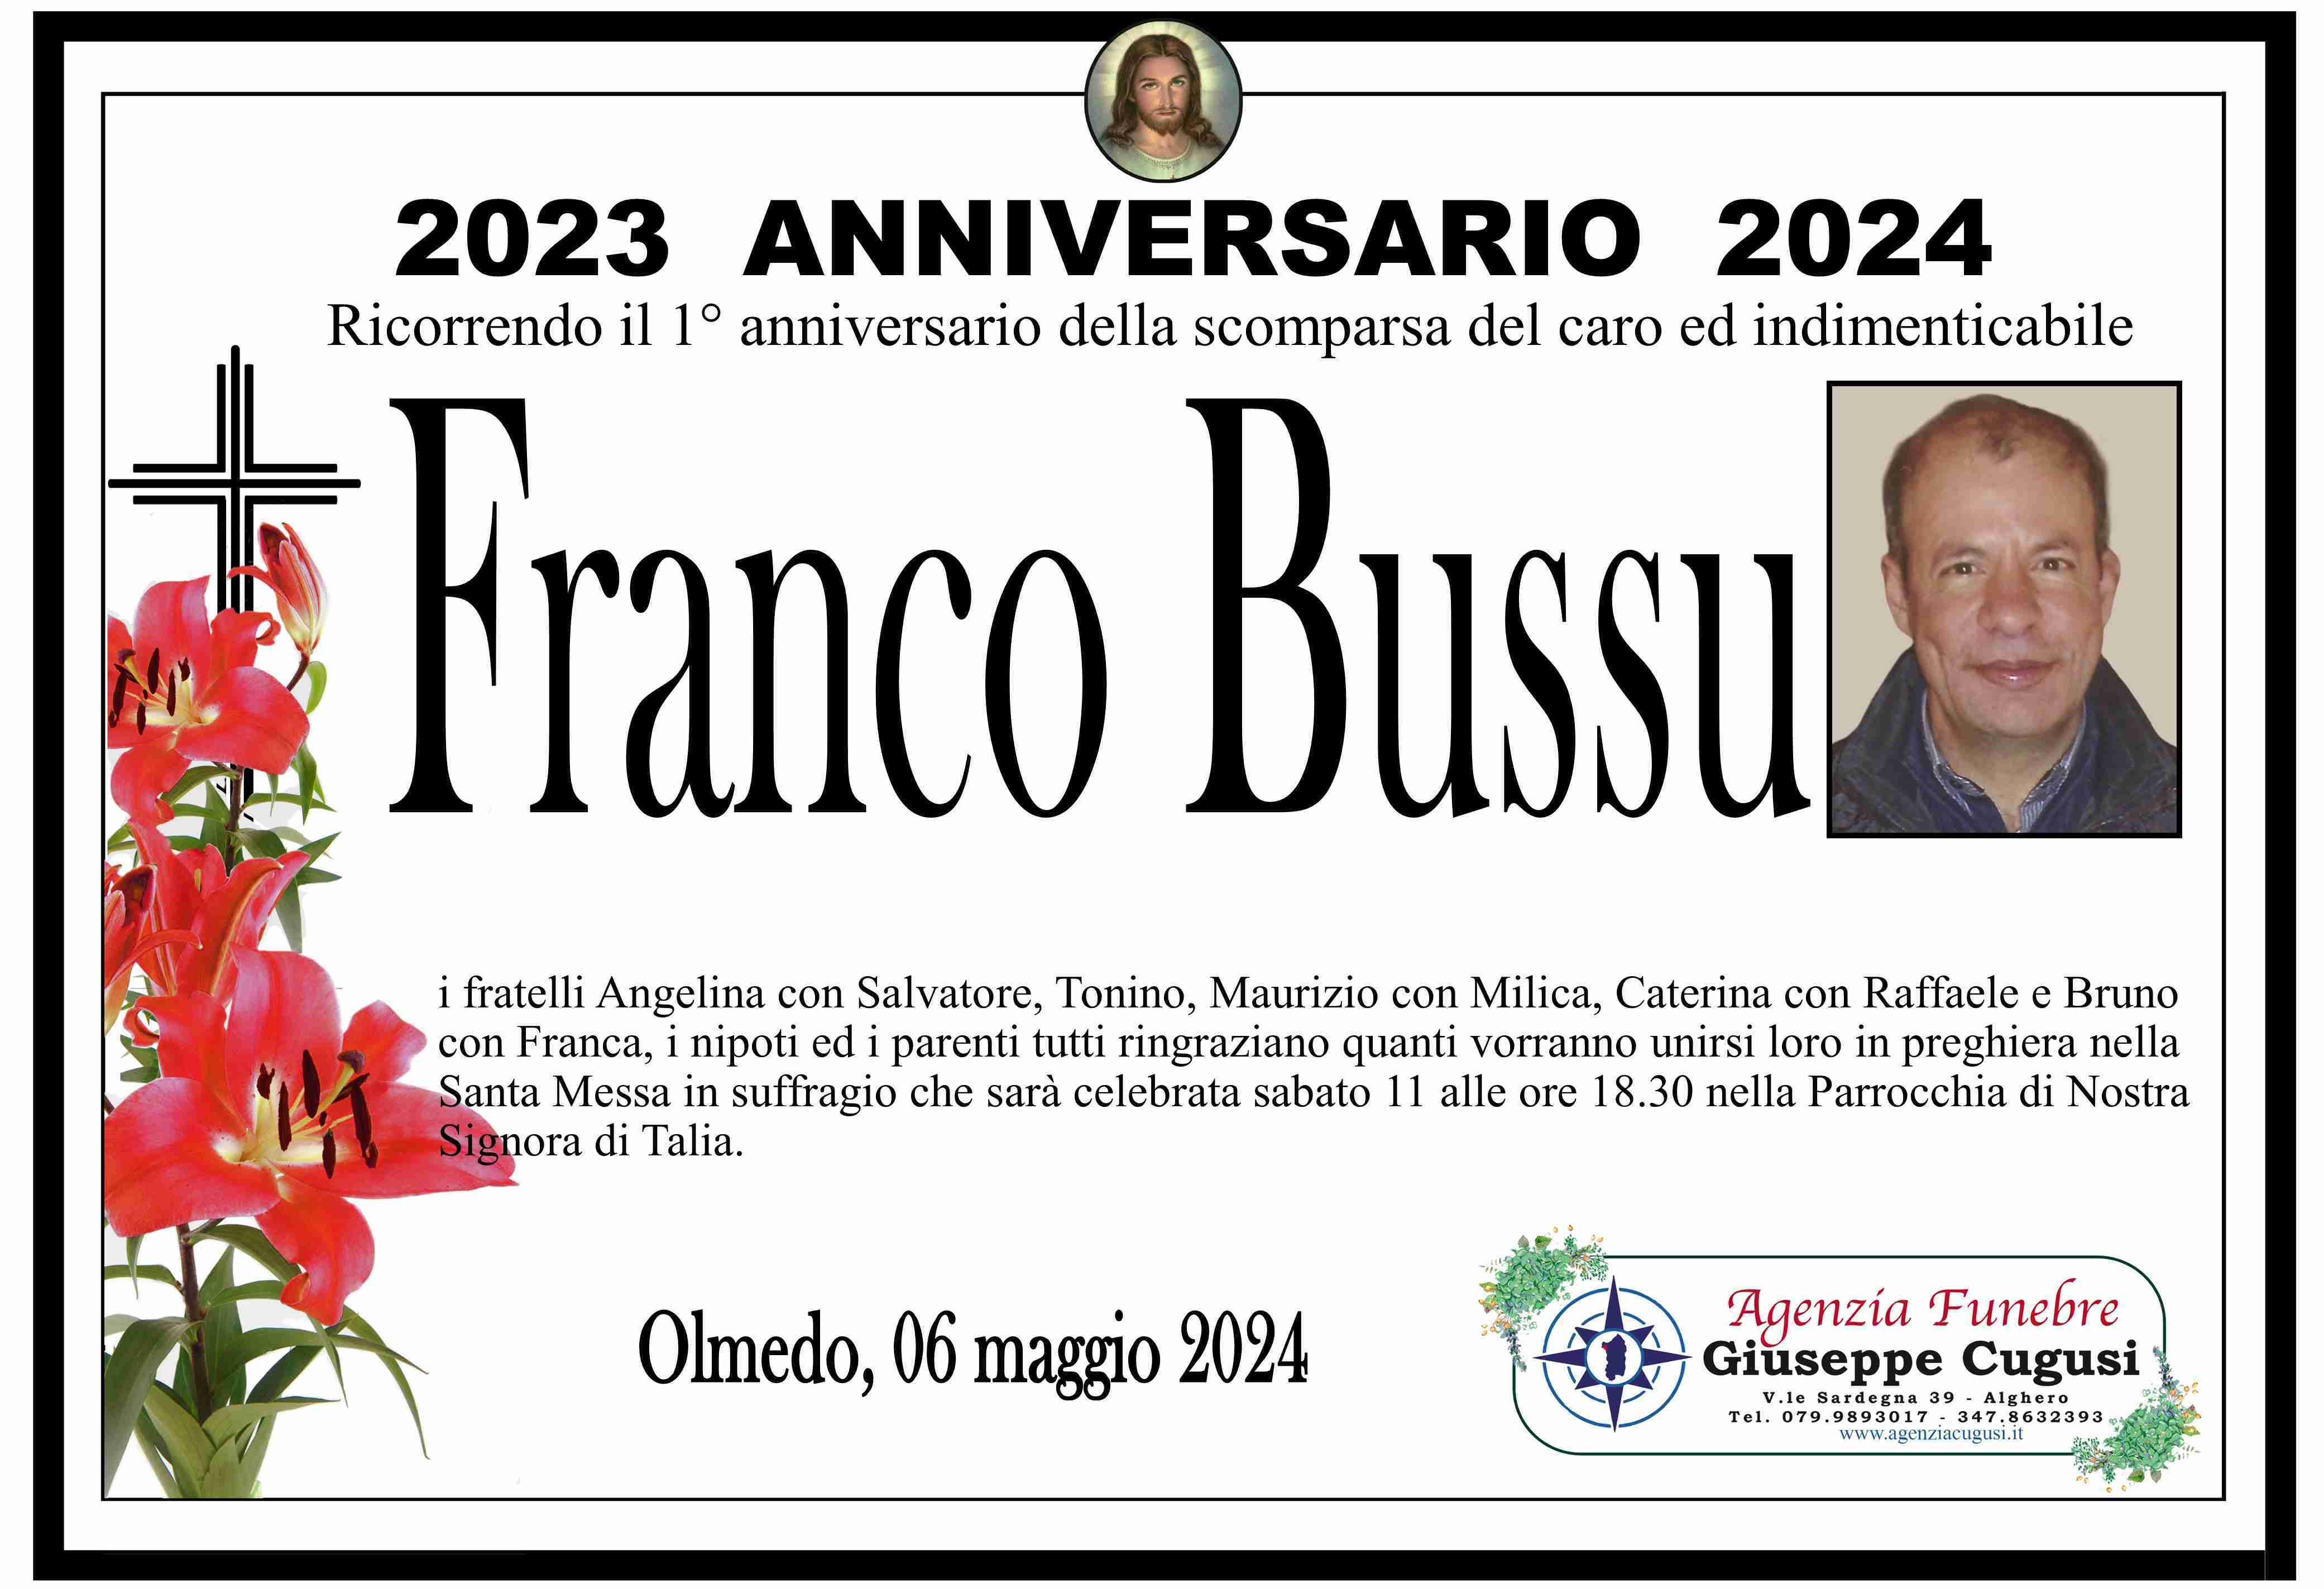 Franco Bussu